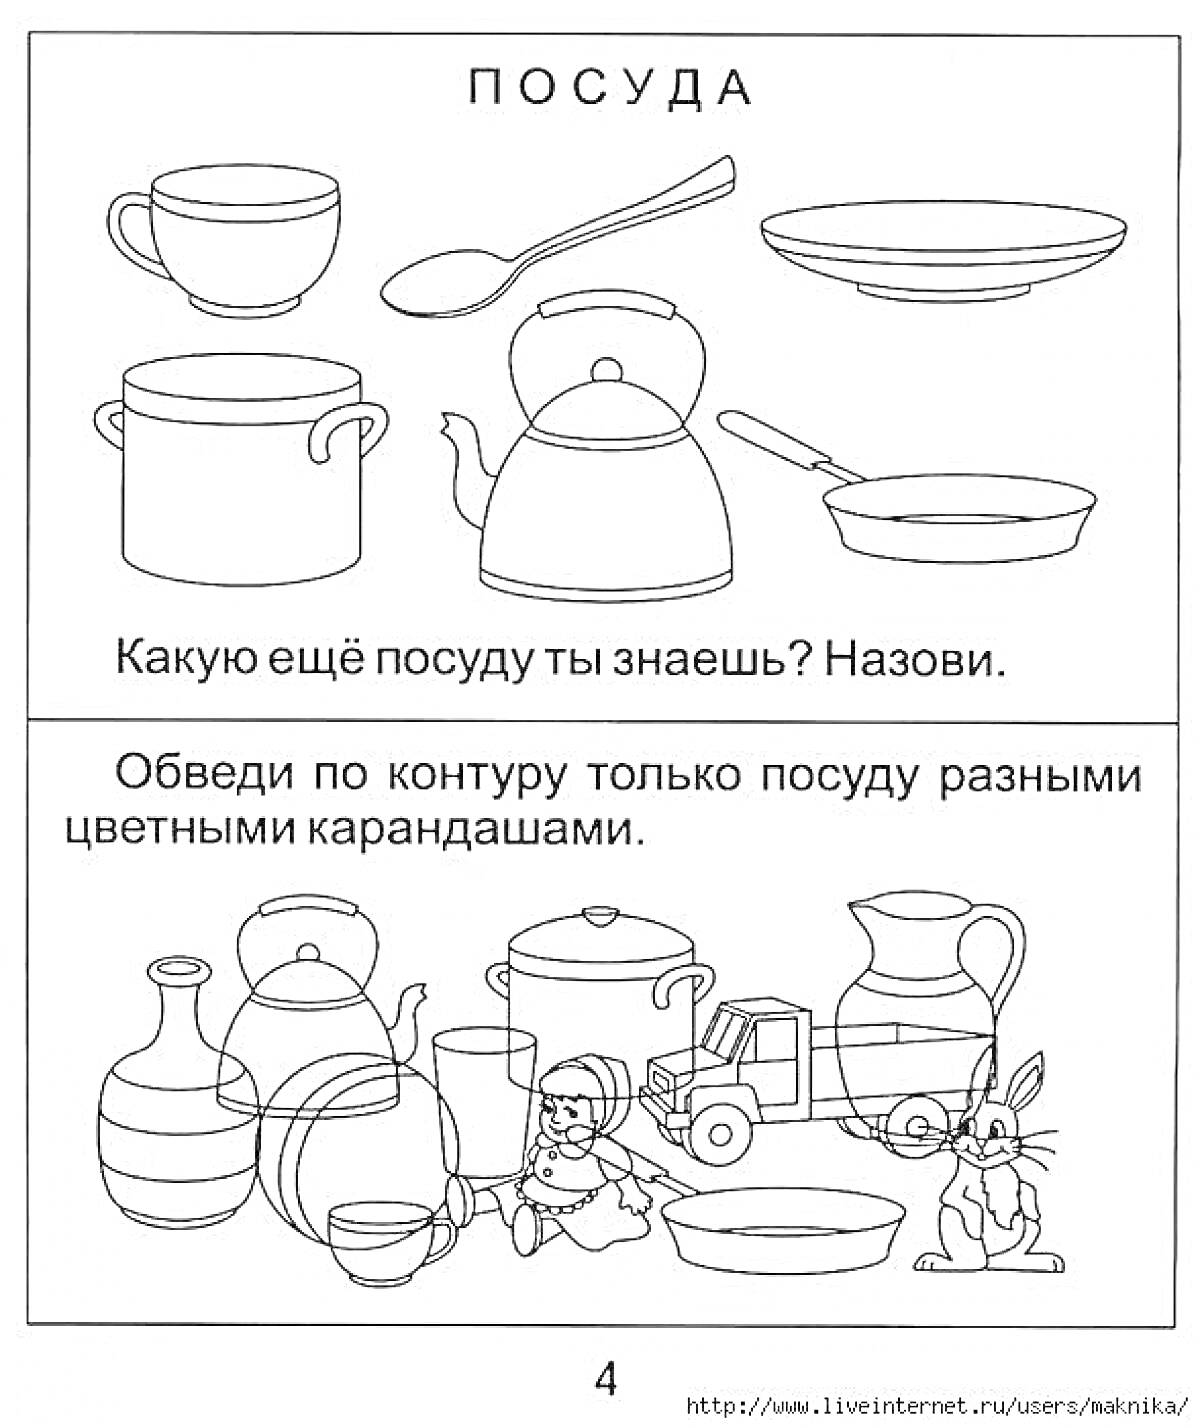 Назовите посуду. Обведение посуды. На изображении: чашка, ложка, тарелка, кастрюля, чайник, миска, ваза, чайник, кувшин, миска, игрушка-головоломка, кукла, грузовик.